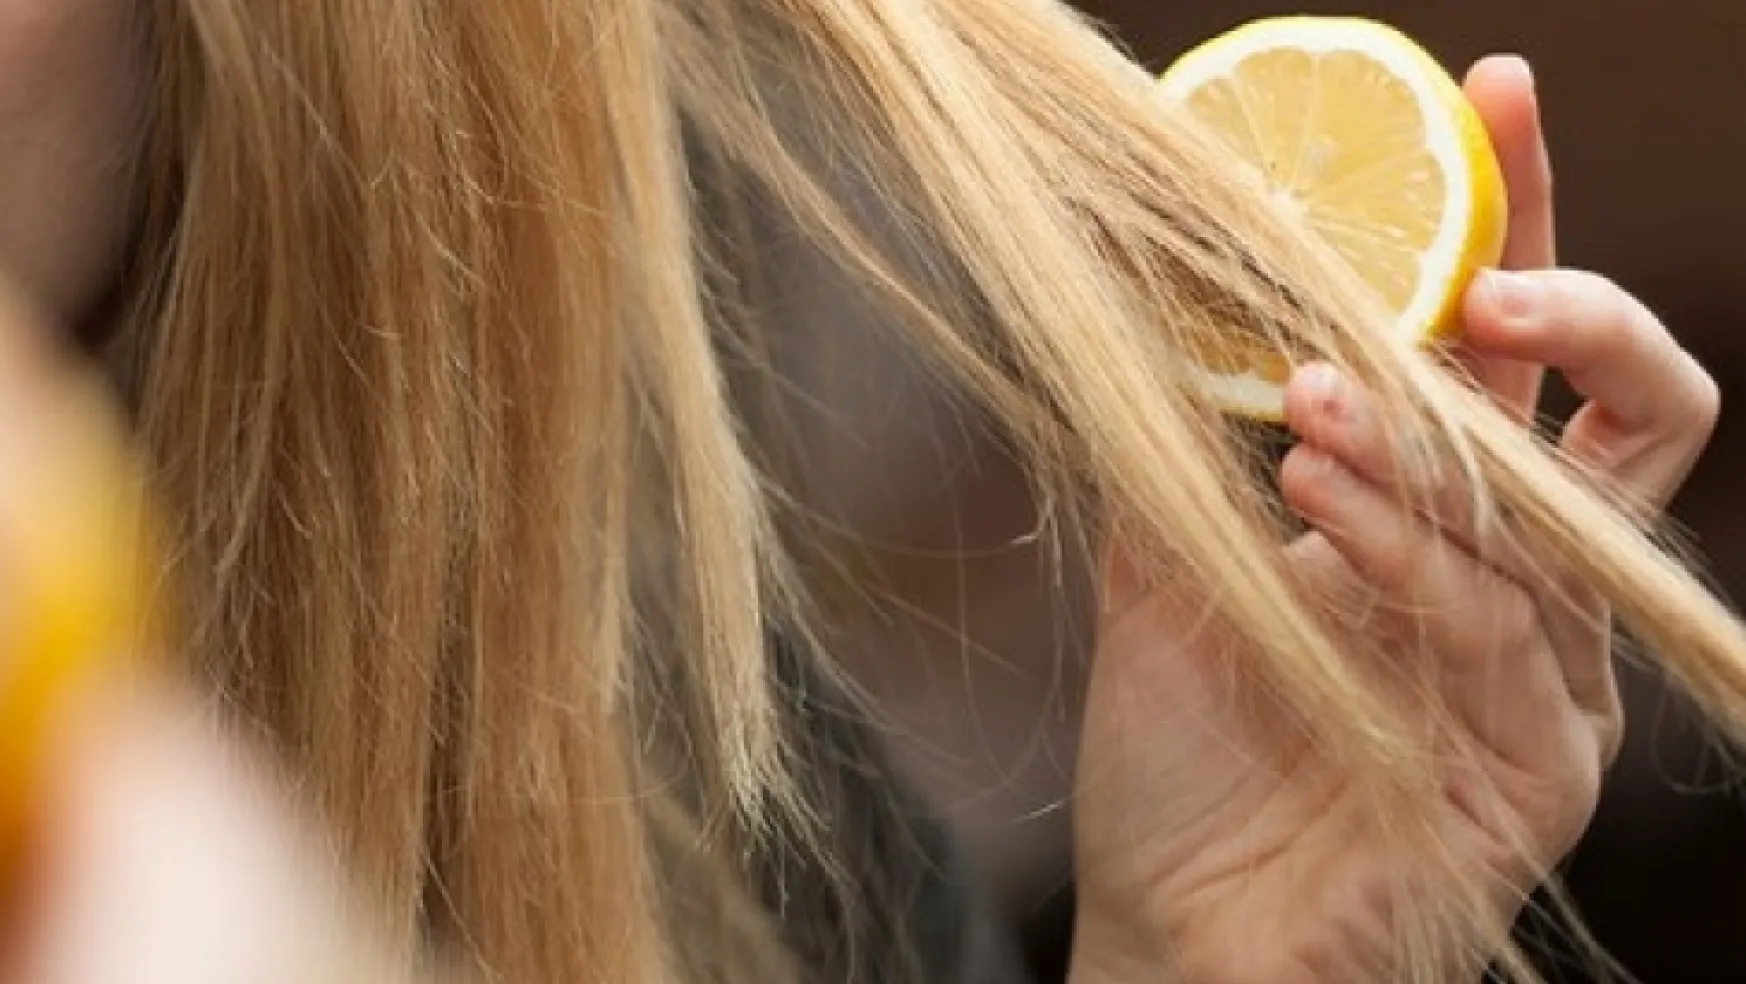 Limonu saçınıza sürünce ne mi oluyor?